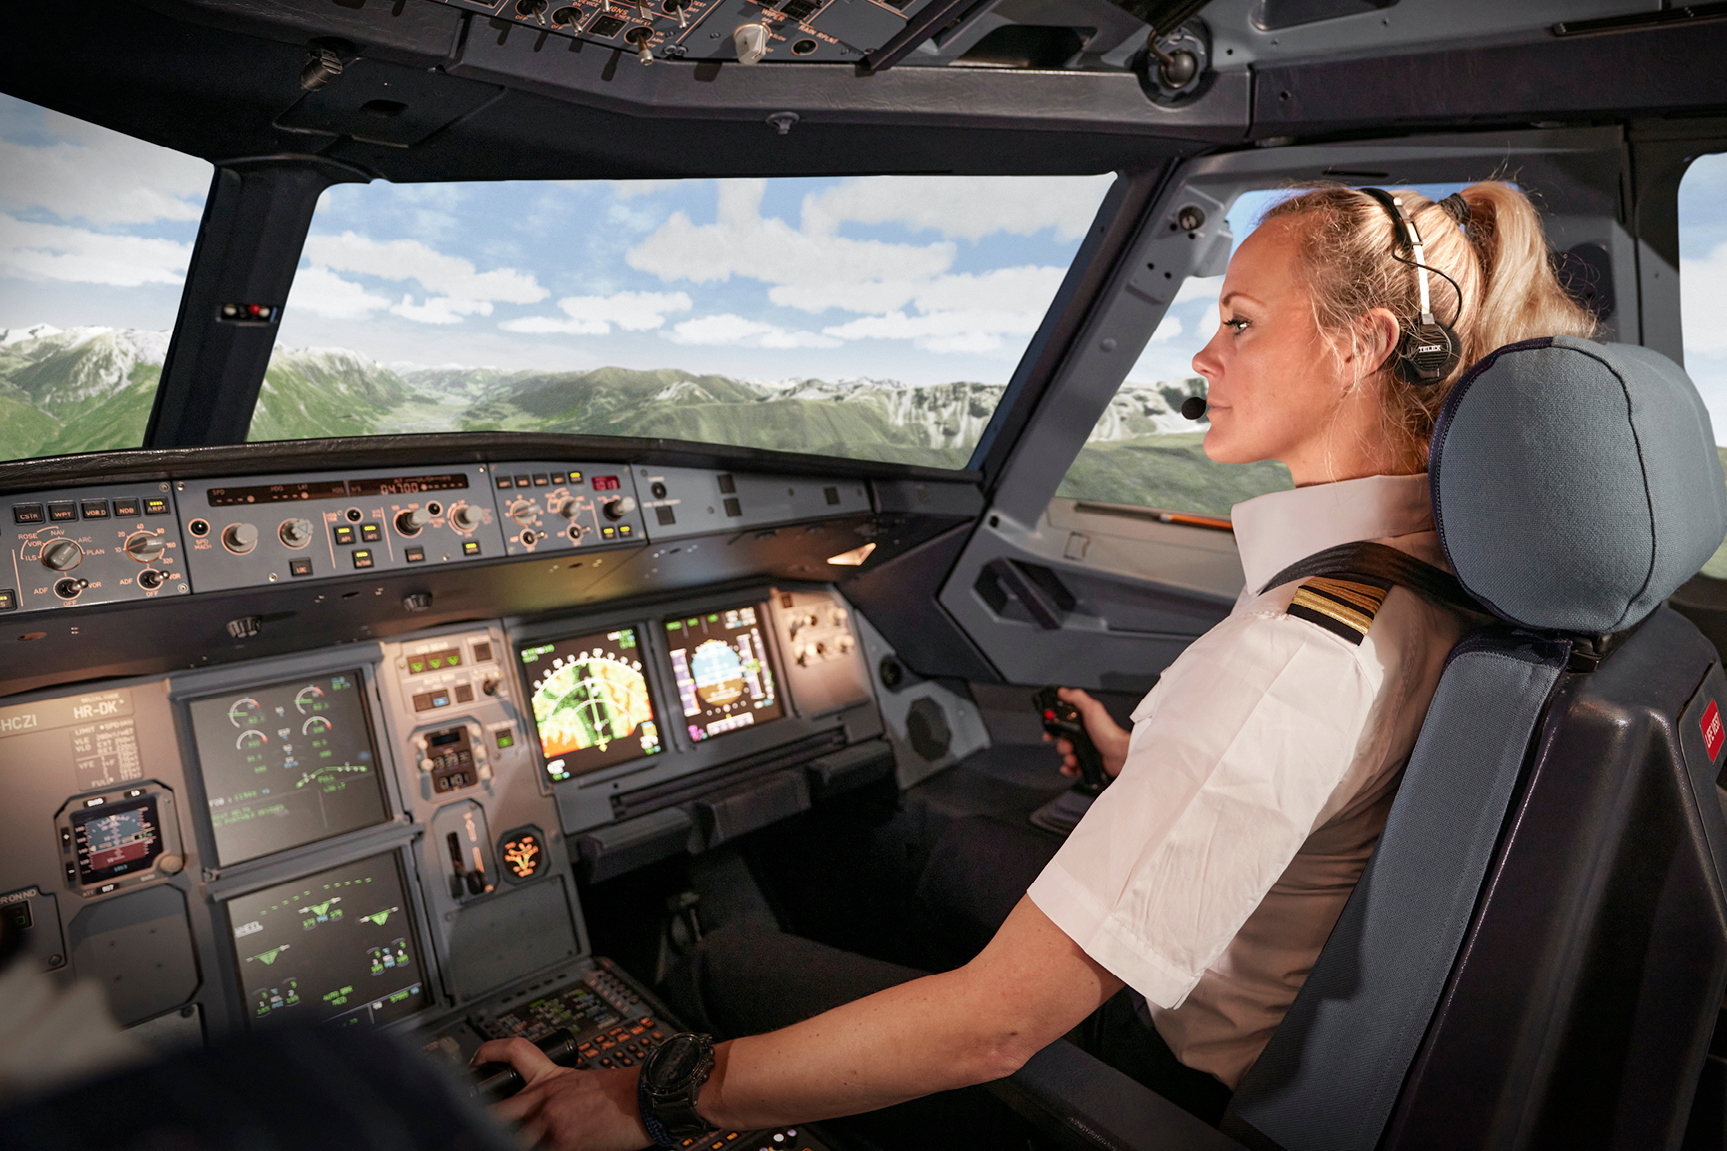 Avion A320 Full Flight Simulator. Click to enlarge.